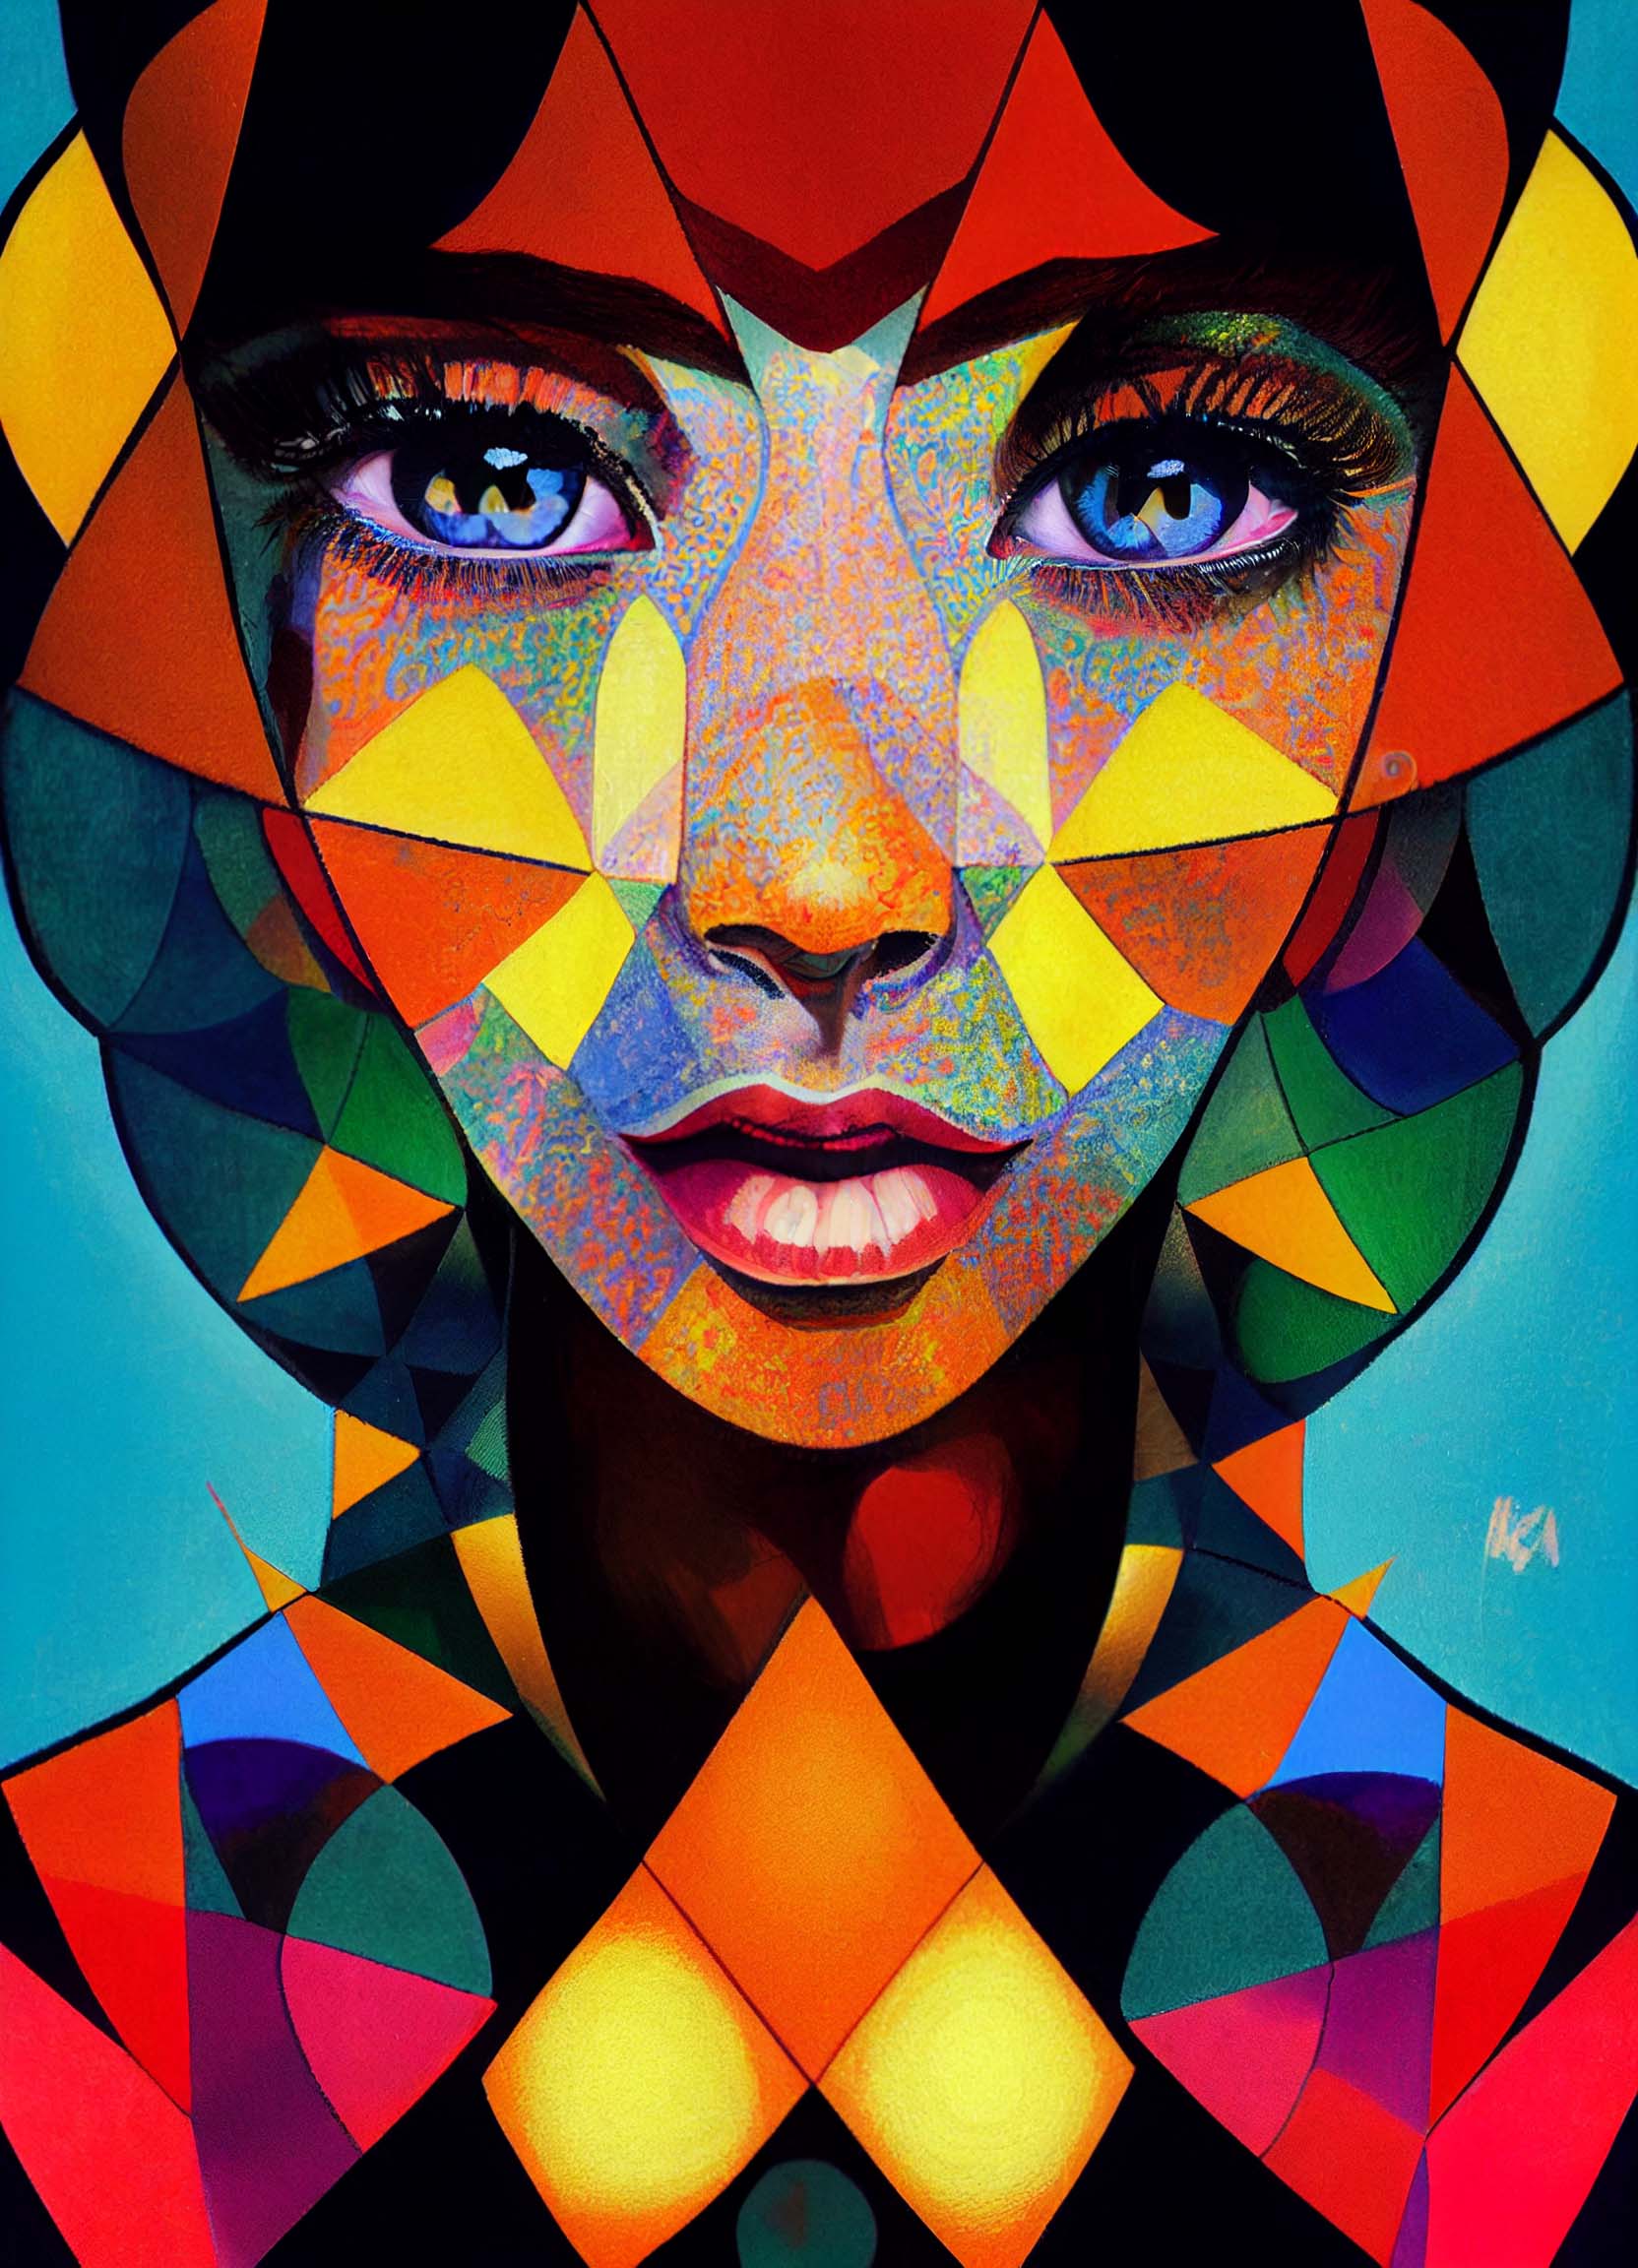 A girl with kaleidoscope eyes